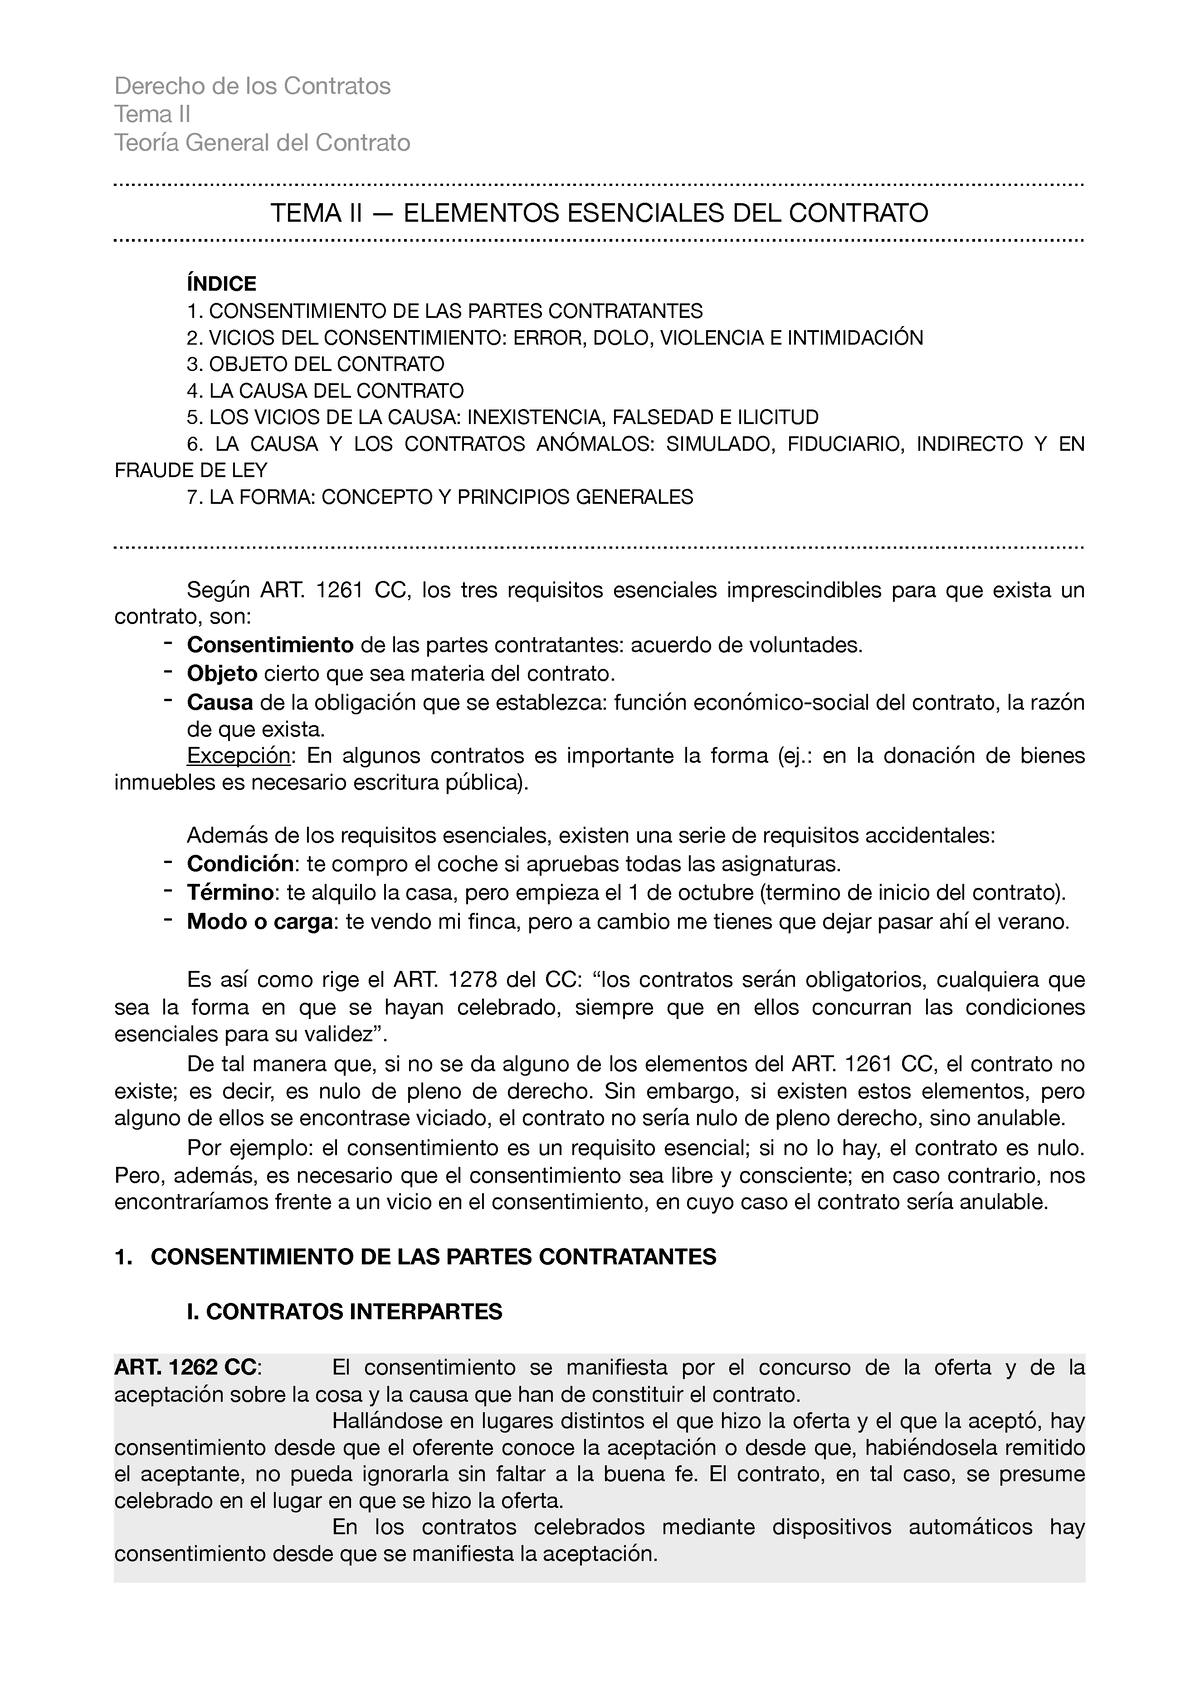 Derecho De Los Contratos Tema Dos Apuntes Tema Ii Teoría General Del Contrato Tema Ii 2690